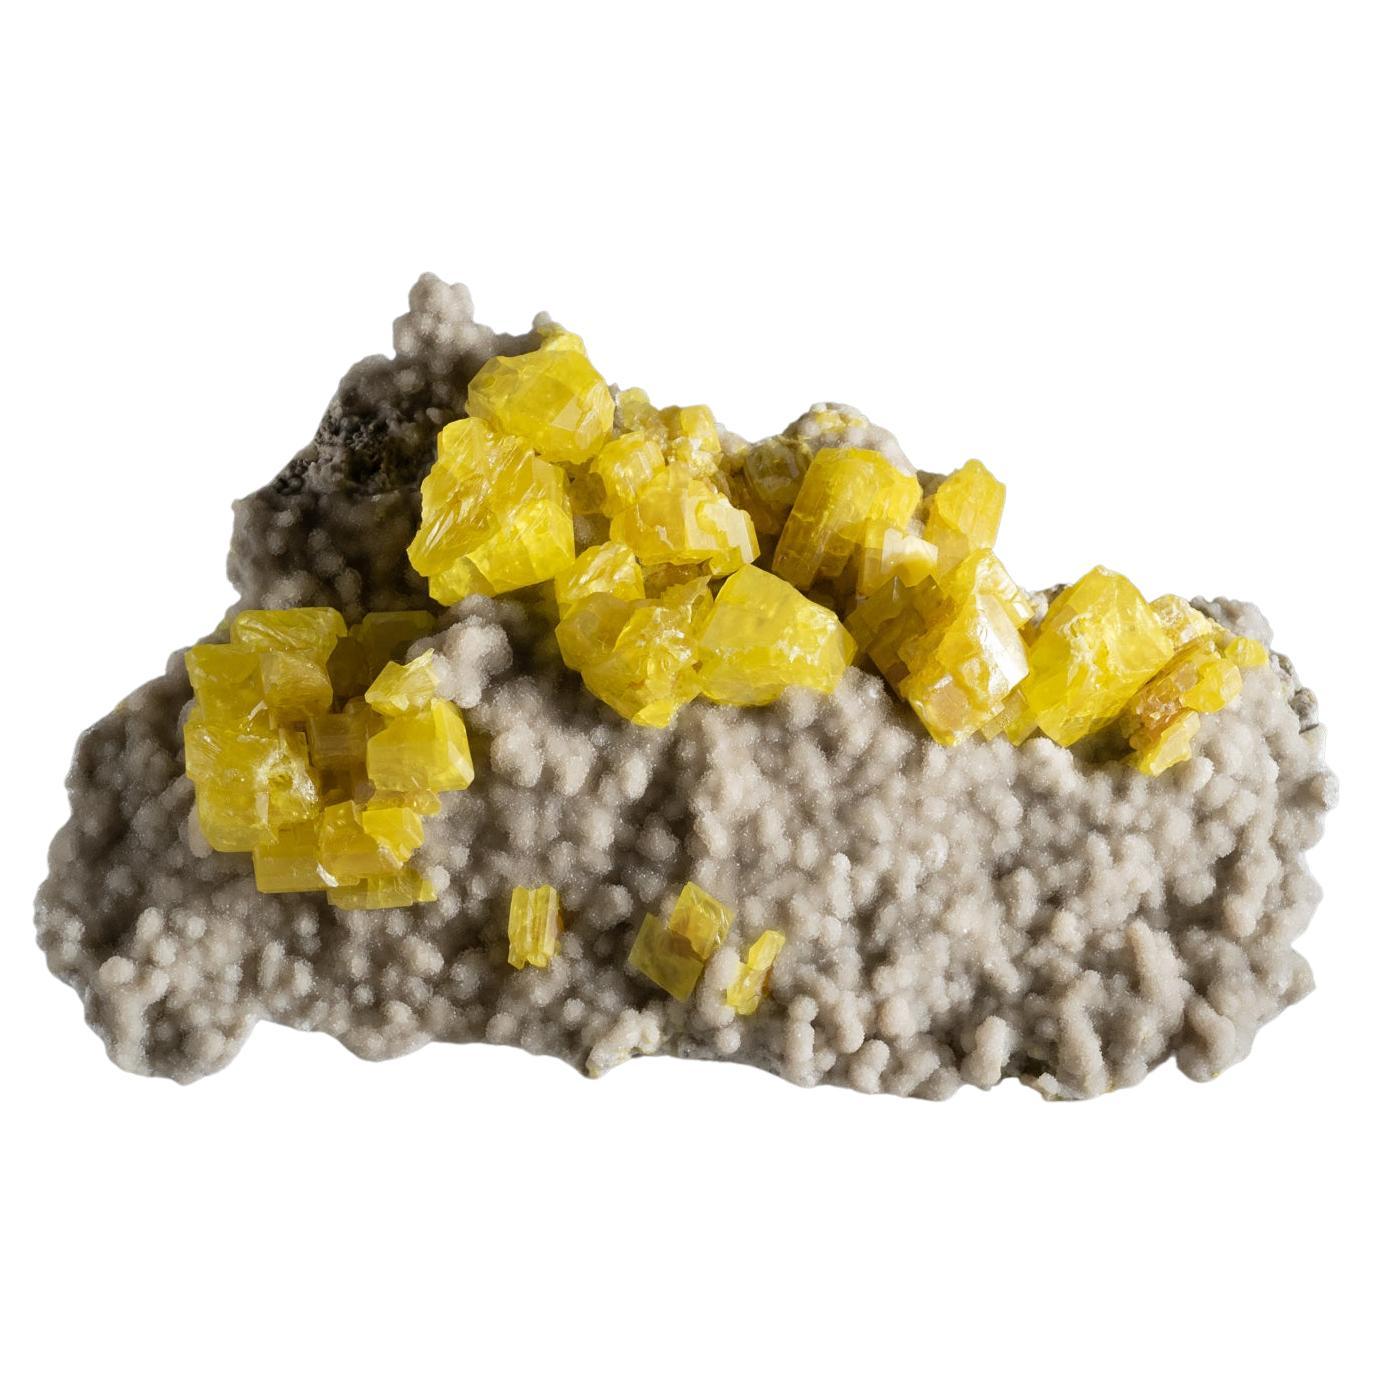 Sulfur auf Aragonit Mineral aus der Provinz Agrigento, Sizilien, Italien